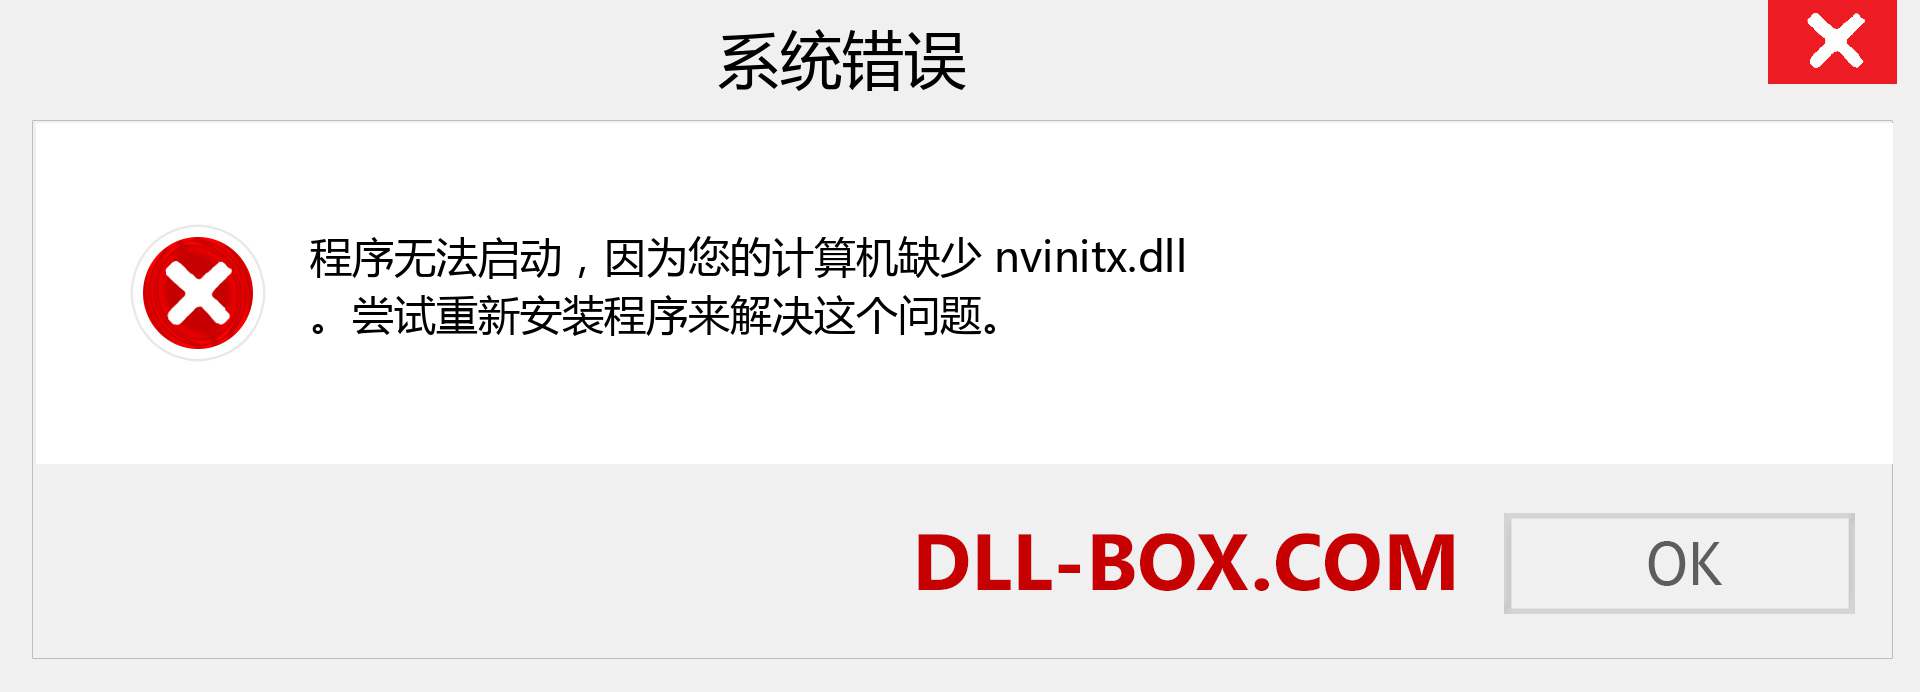 nvinitx.dll 文件丢失？。 适用于 Windows 7、8、10 的下载 - 修复 Windows、照片、图像上的 nvinitx dll 丢失错误